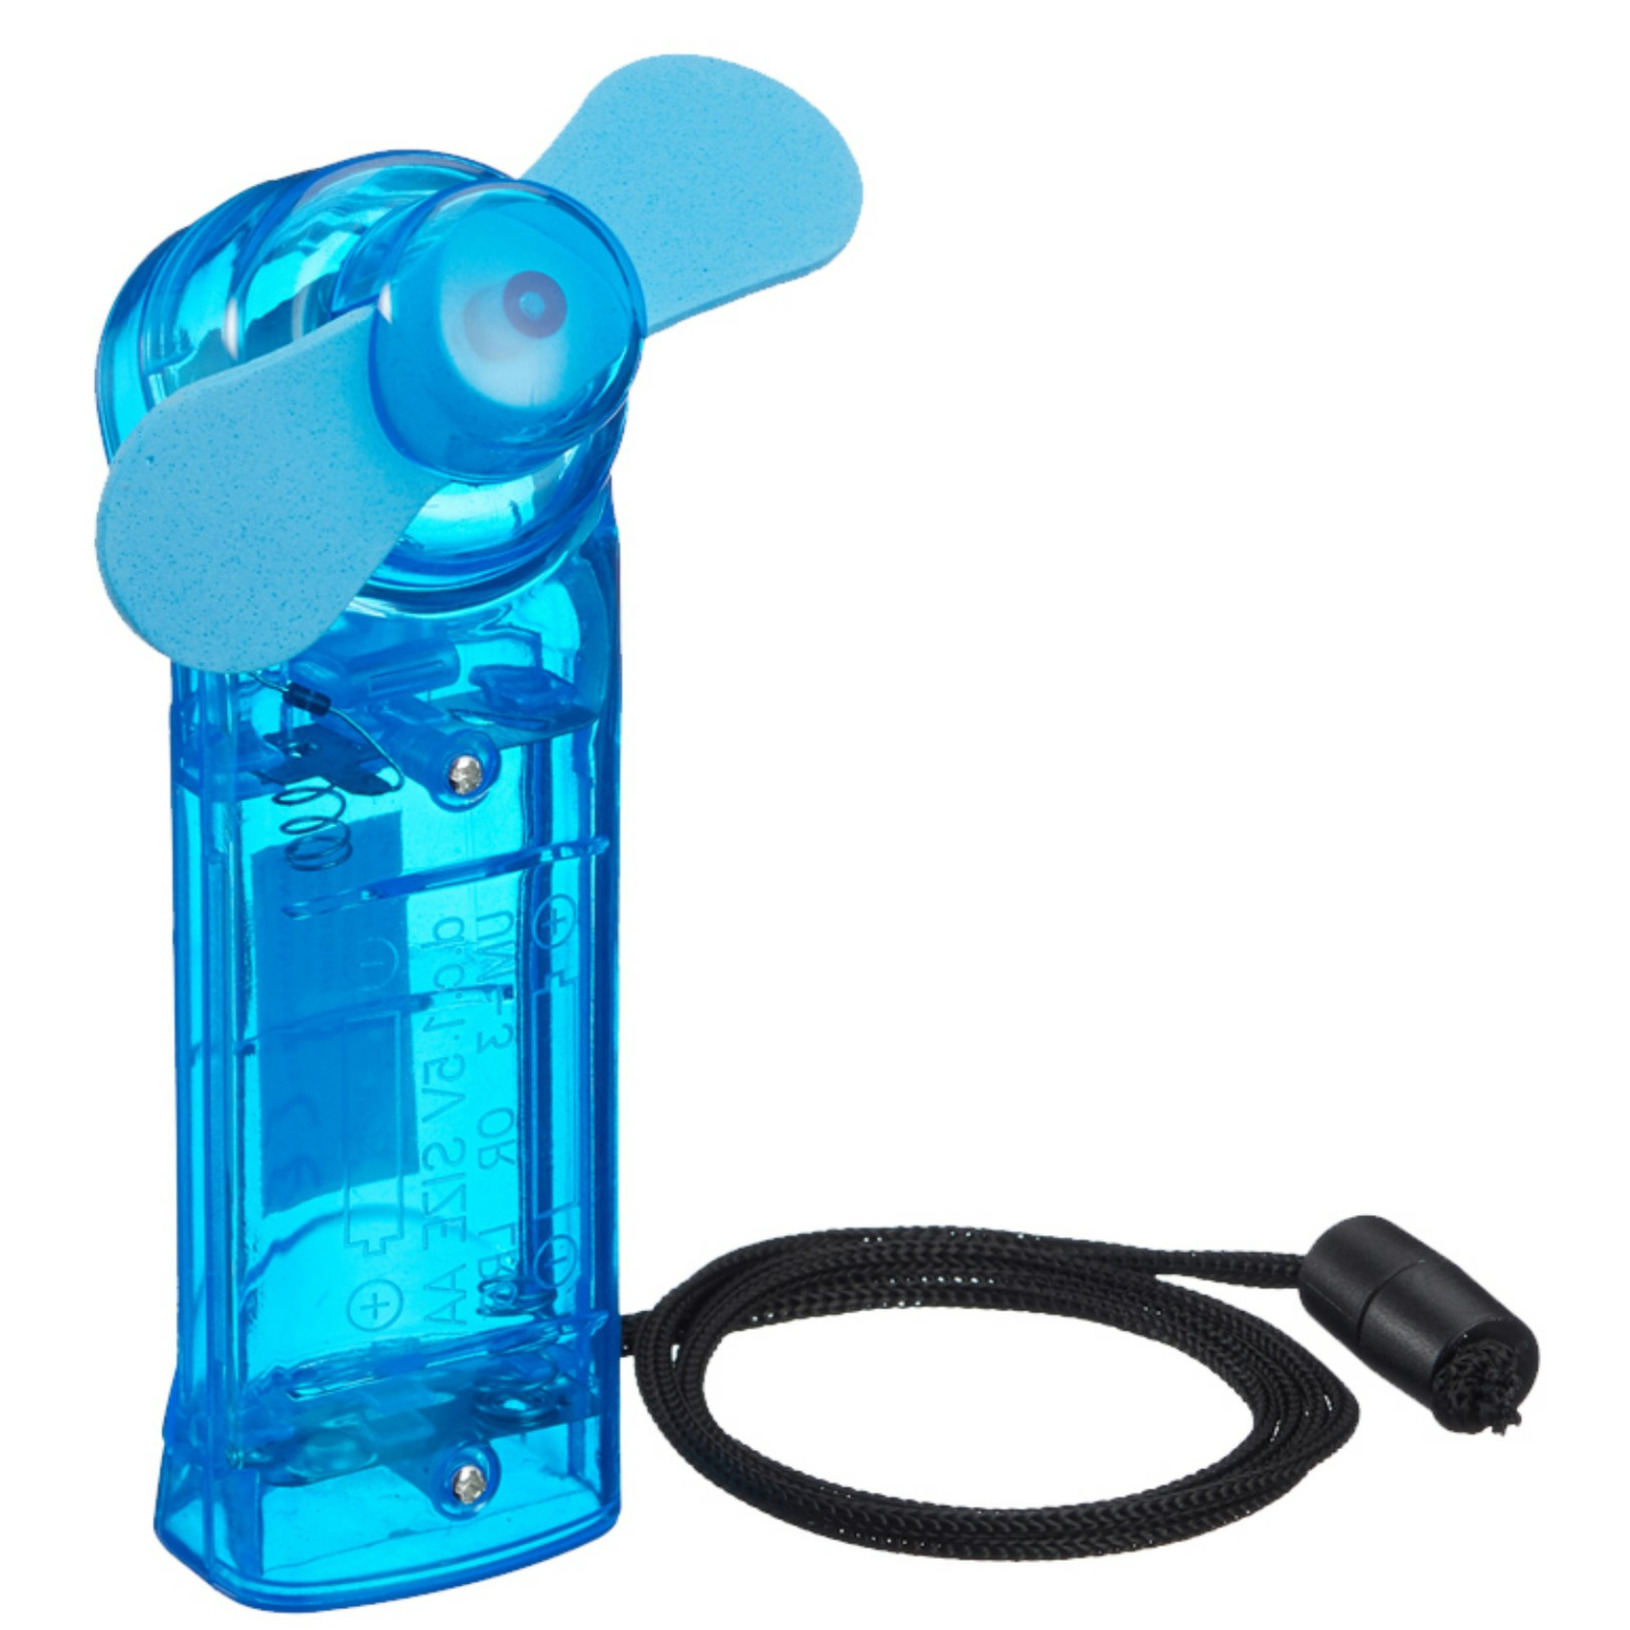 Ventilator voor in je hand Verkoeling in zomer 10 cm Blauw